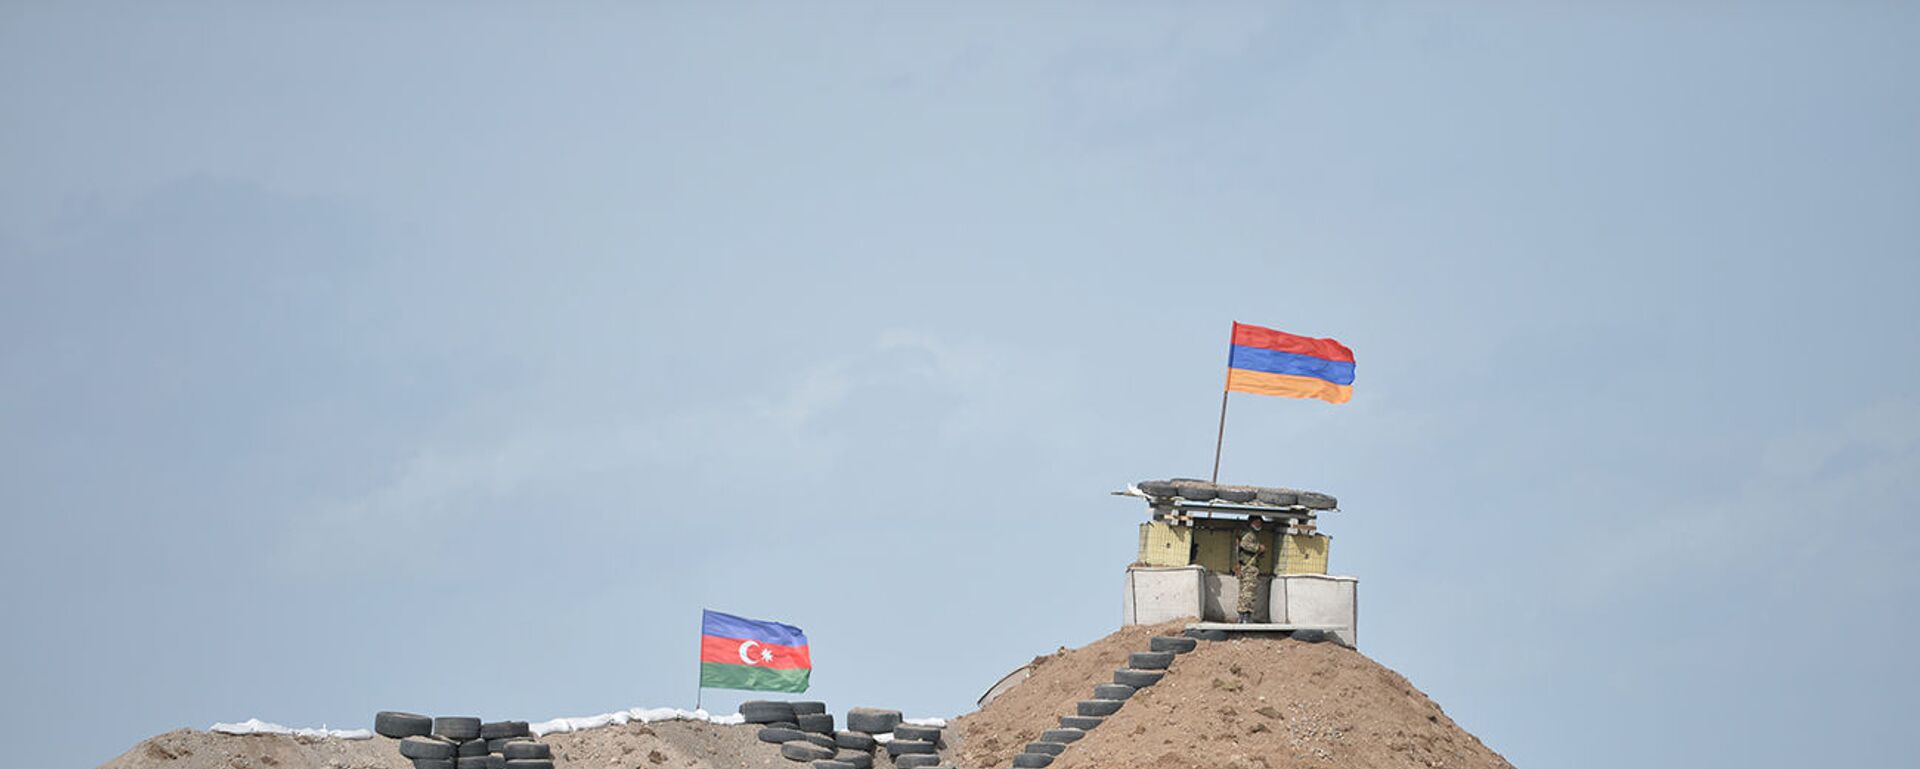 Военные посты на армянсо-азербайджанской границе - Sputnik Արմենիա, 1920, 28.05.2021